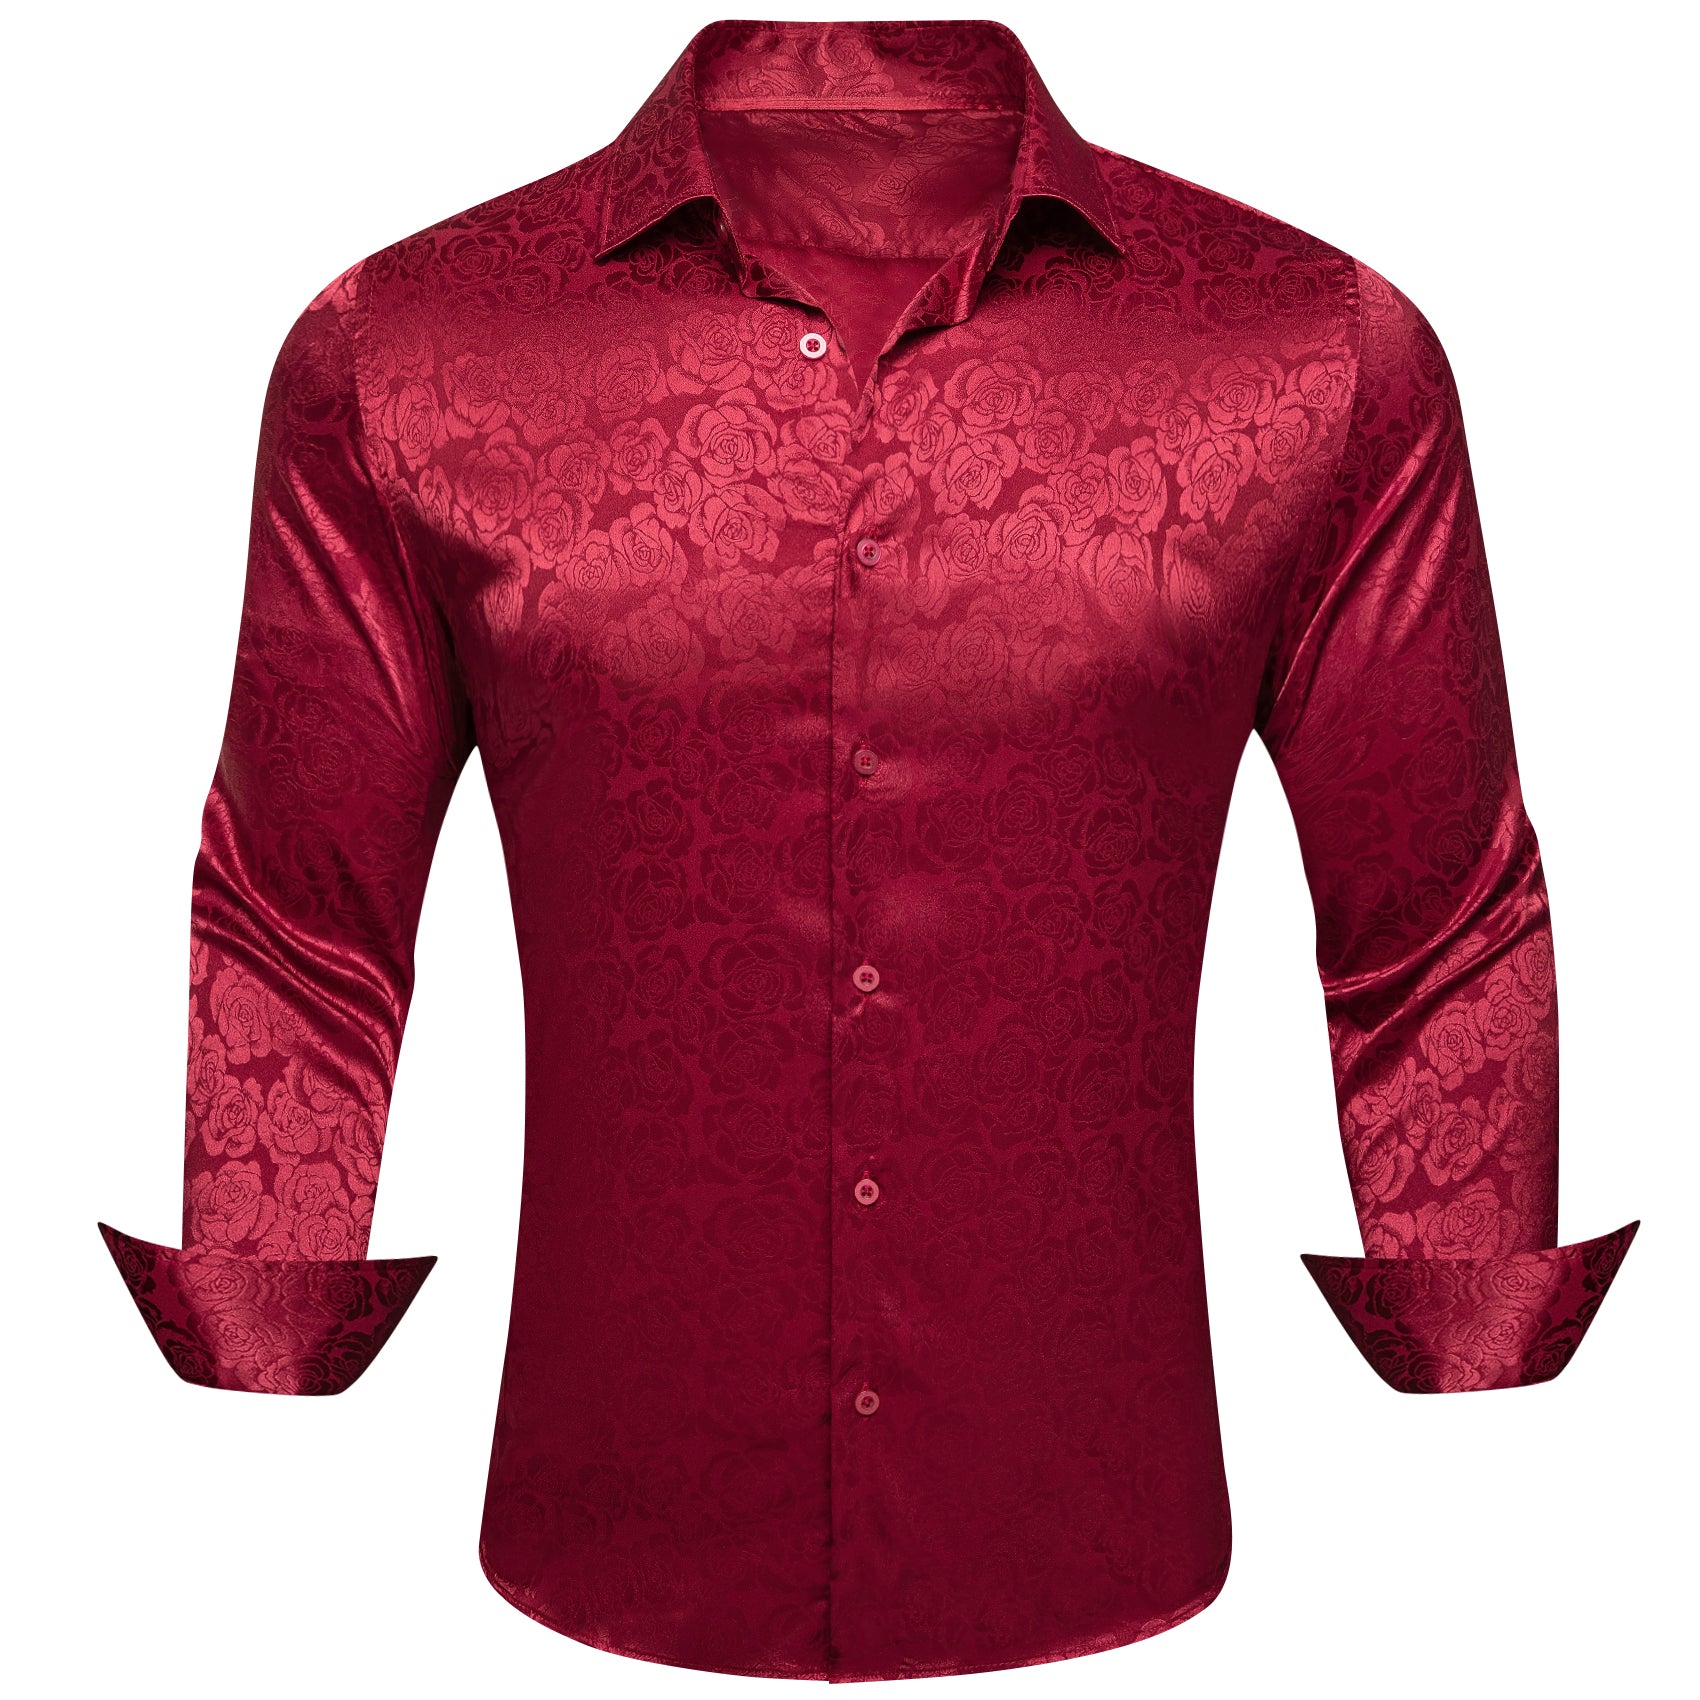 Barry.wang Men's Long Sleeve Shirt Dark Red Print Floral Silk Men's Shirt